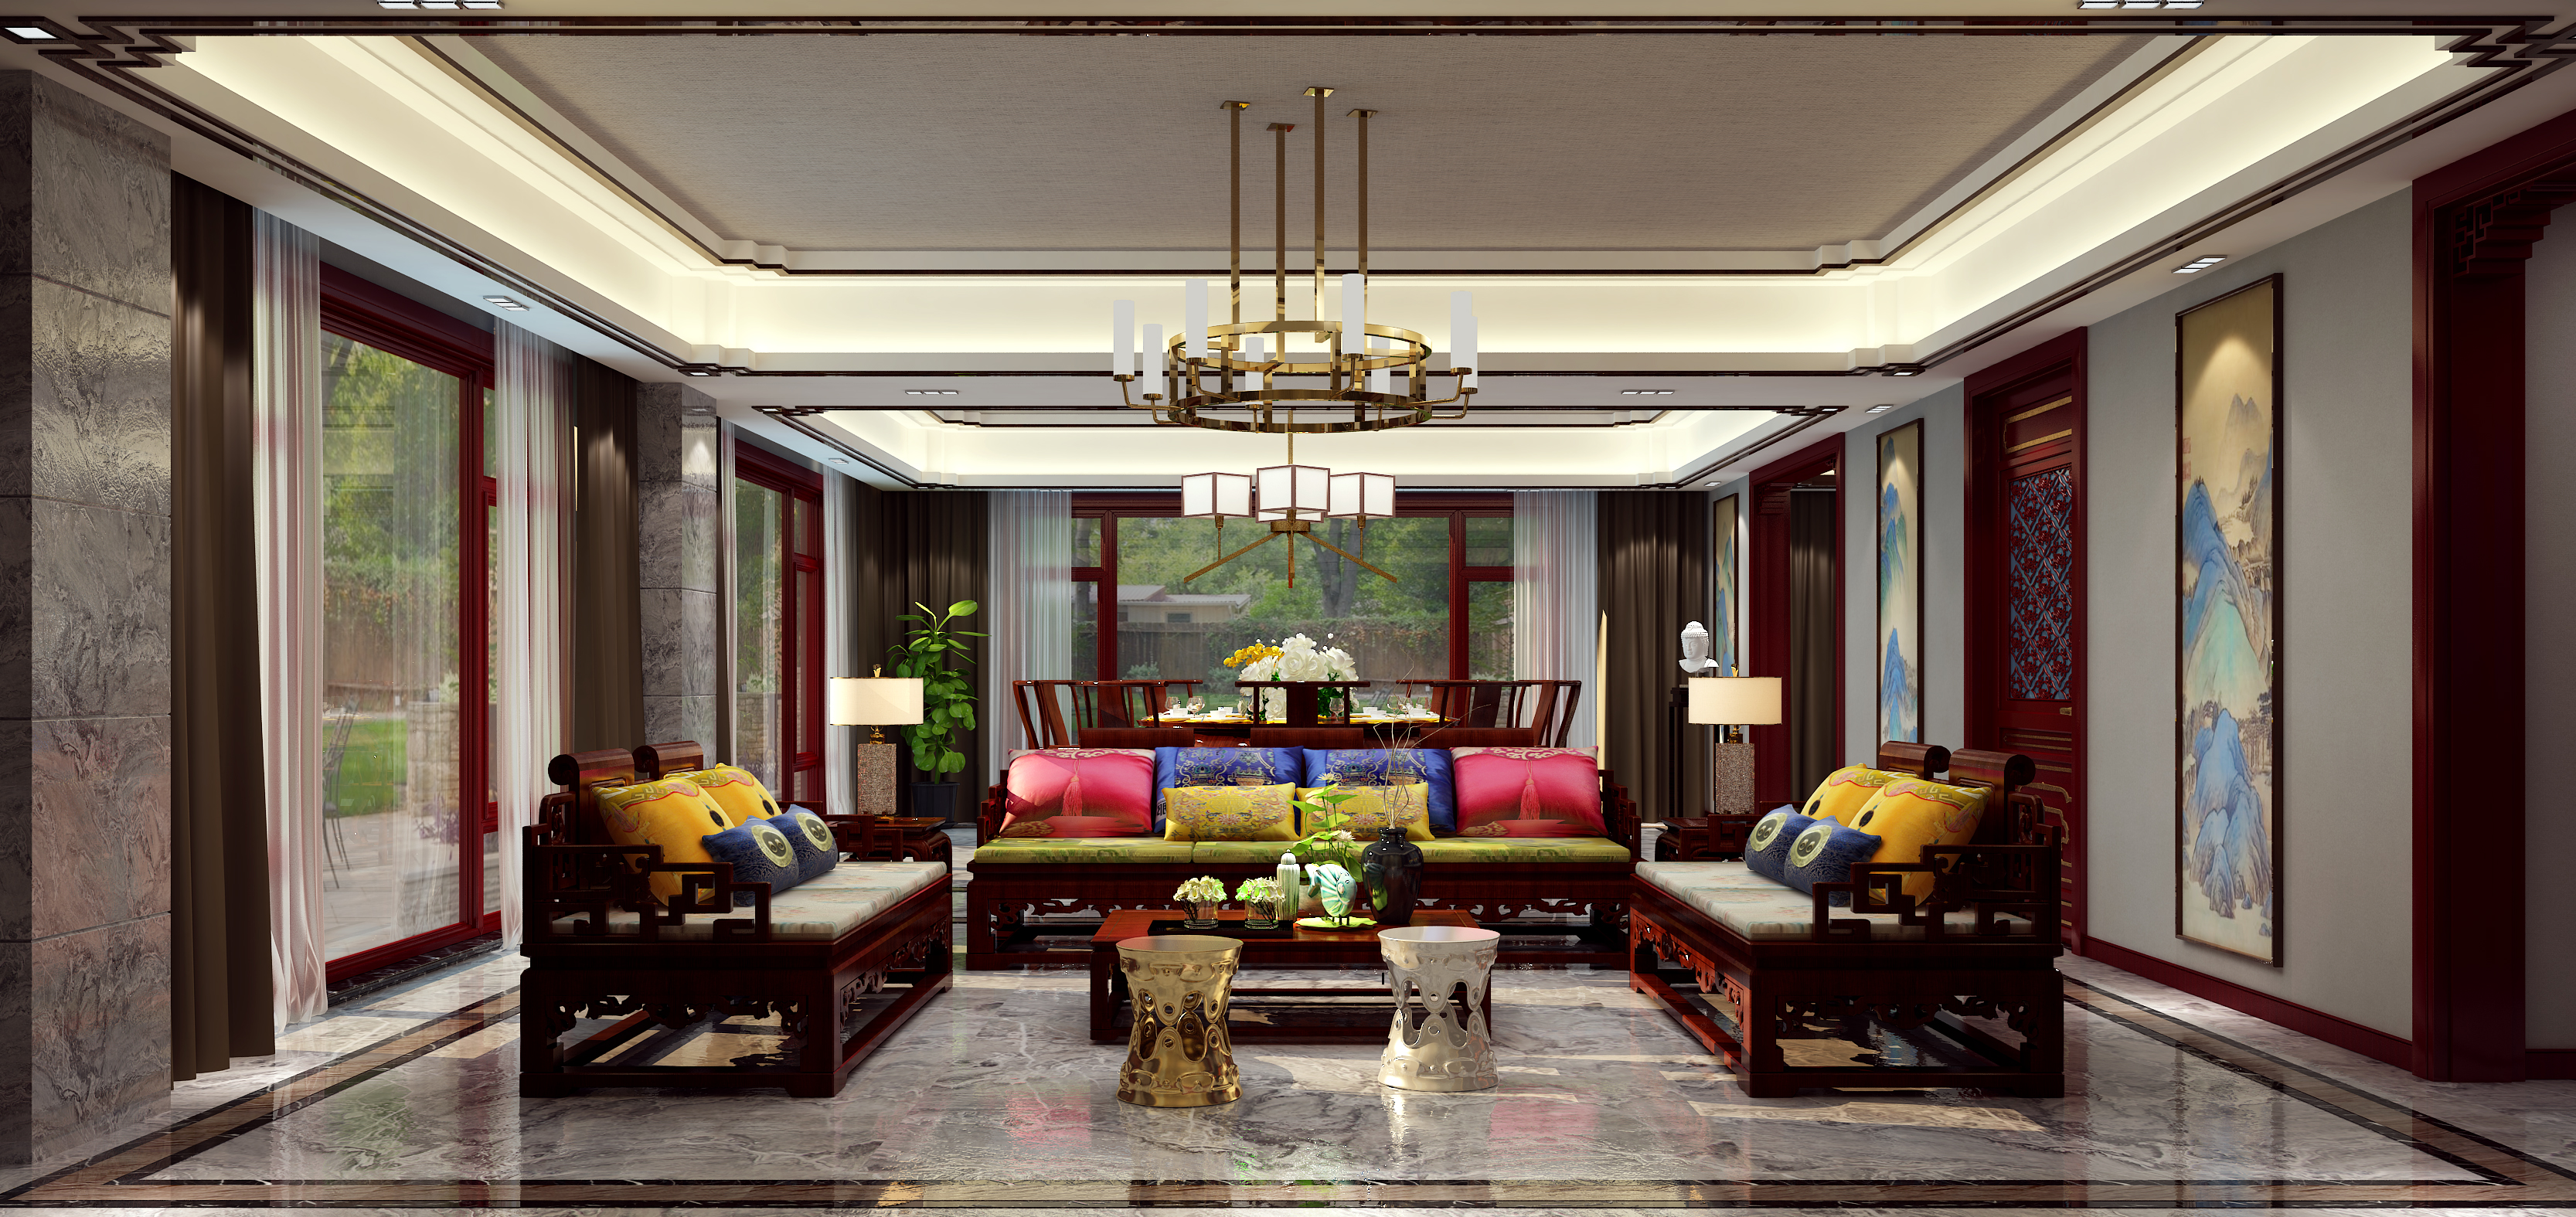 法式 客厅图片来自唐山高度国际装饰在新世界丽樽的分享